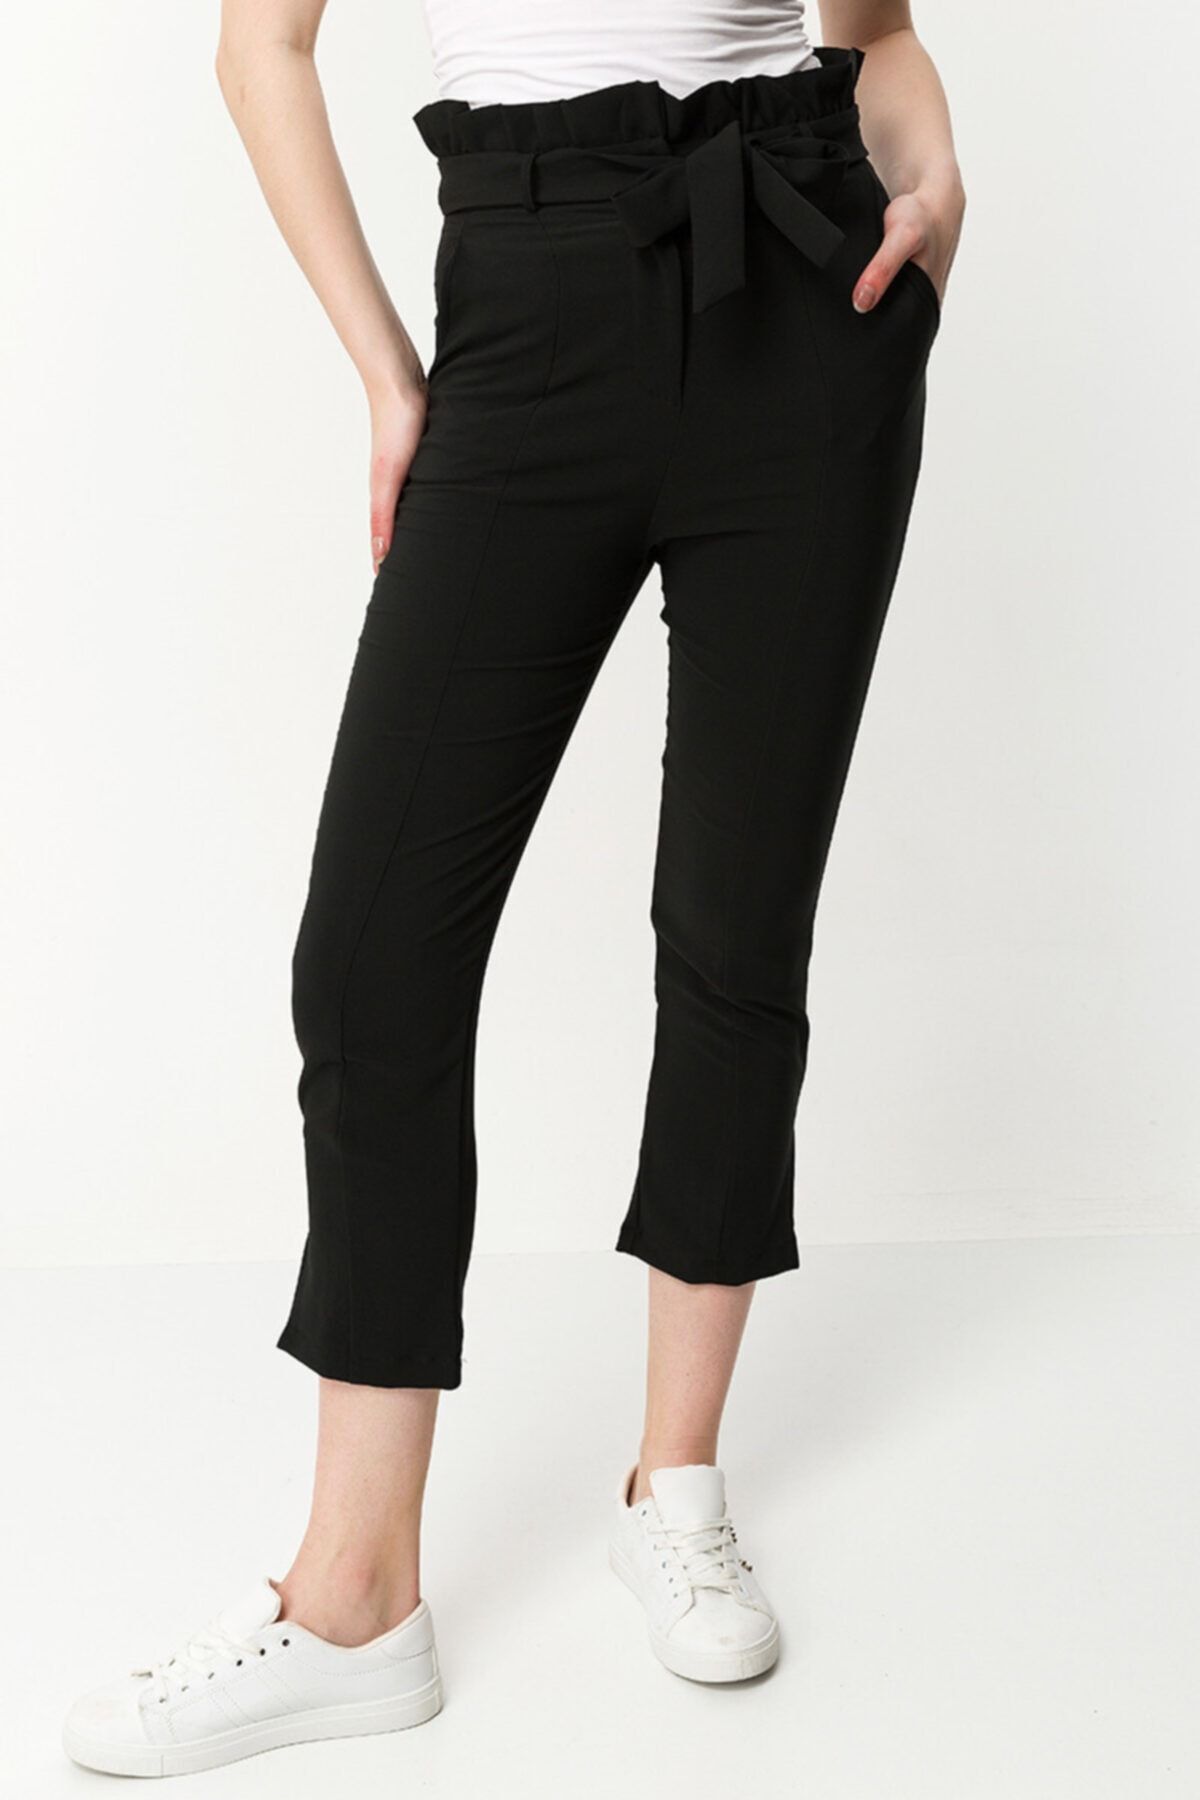 Stamina Kadın Beli Fırfırlı Paçası Yırtmaçlı Pantolon-siyah 1845401